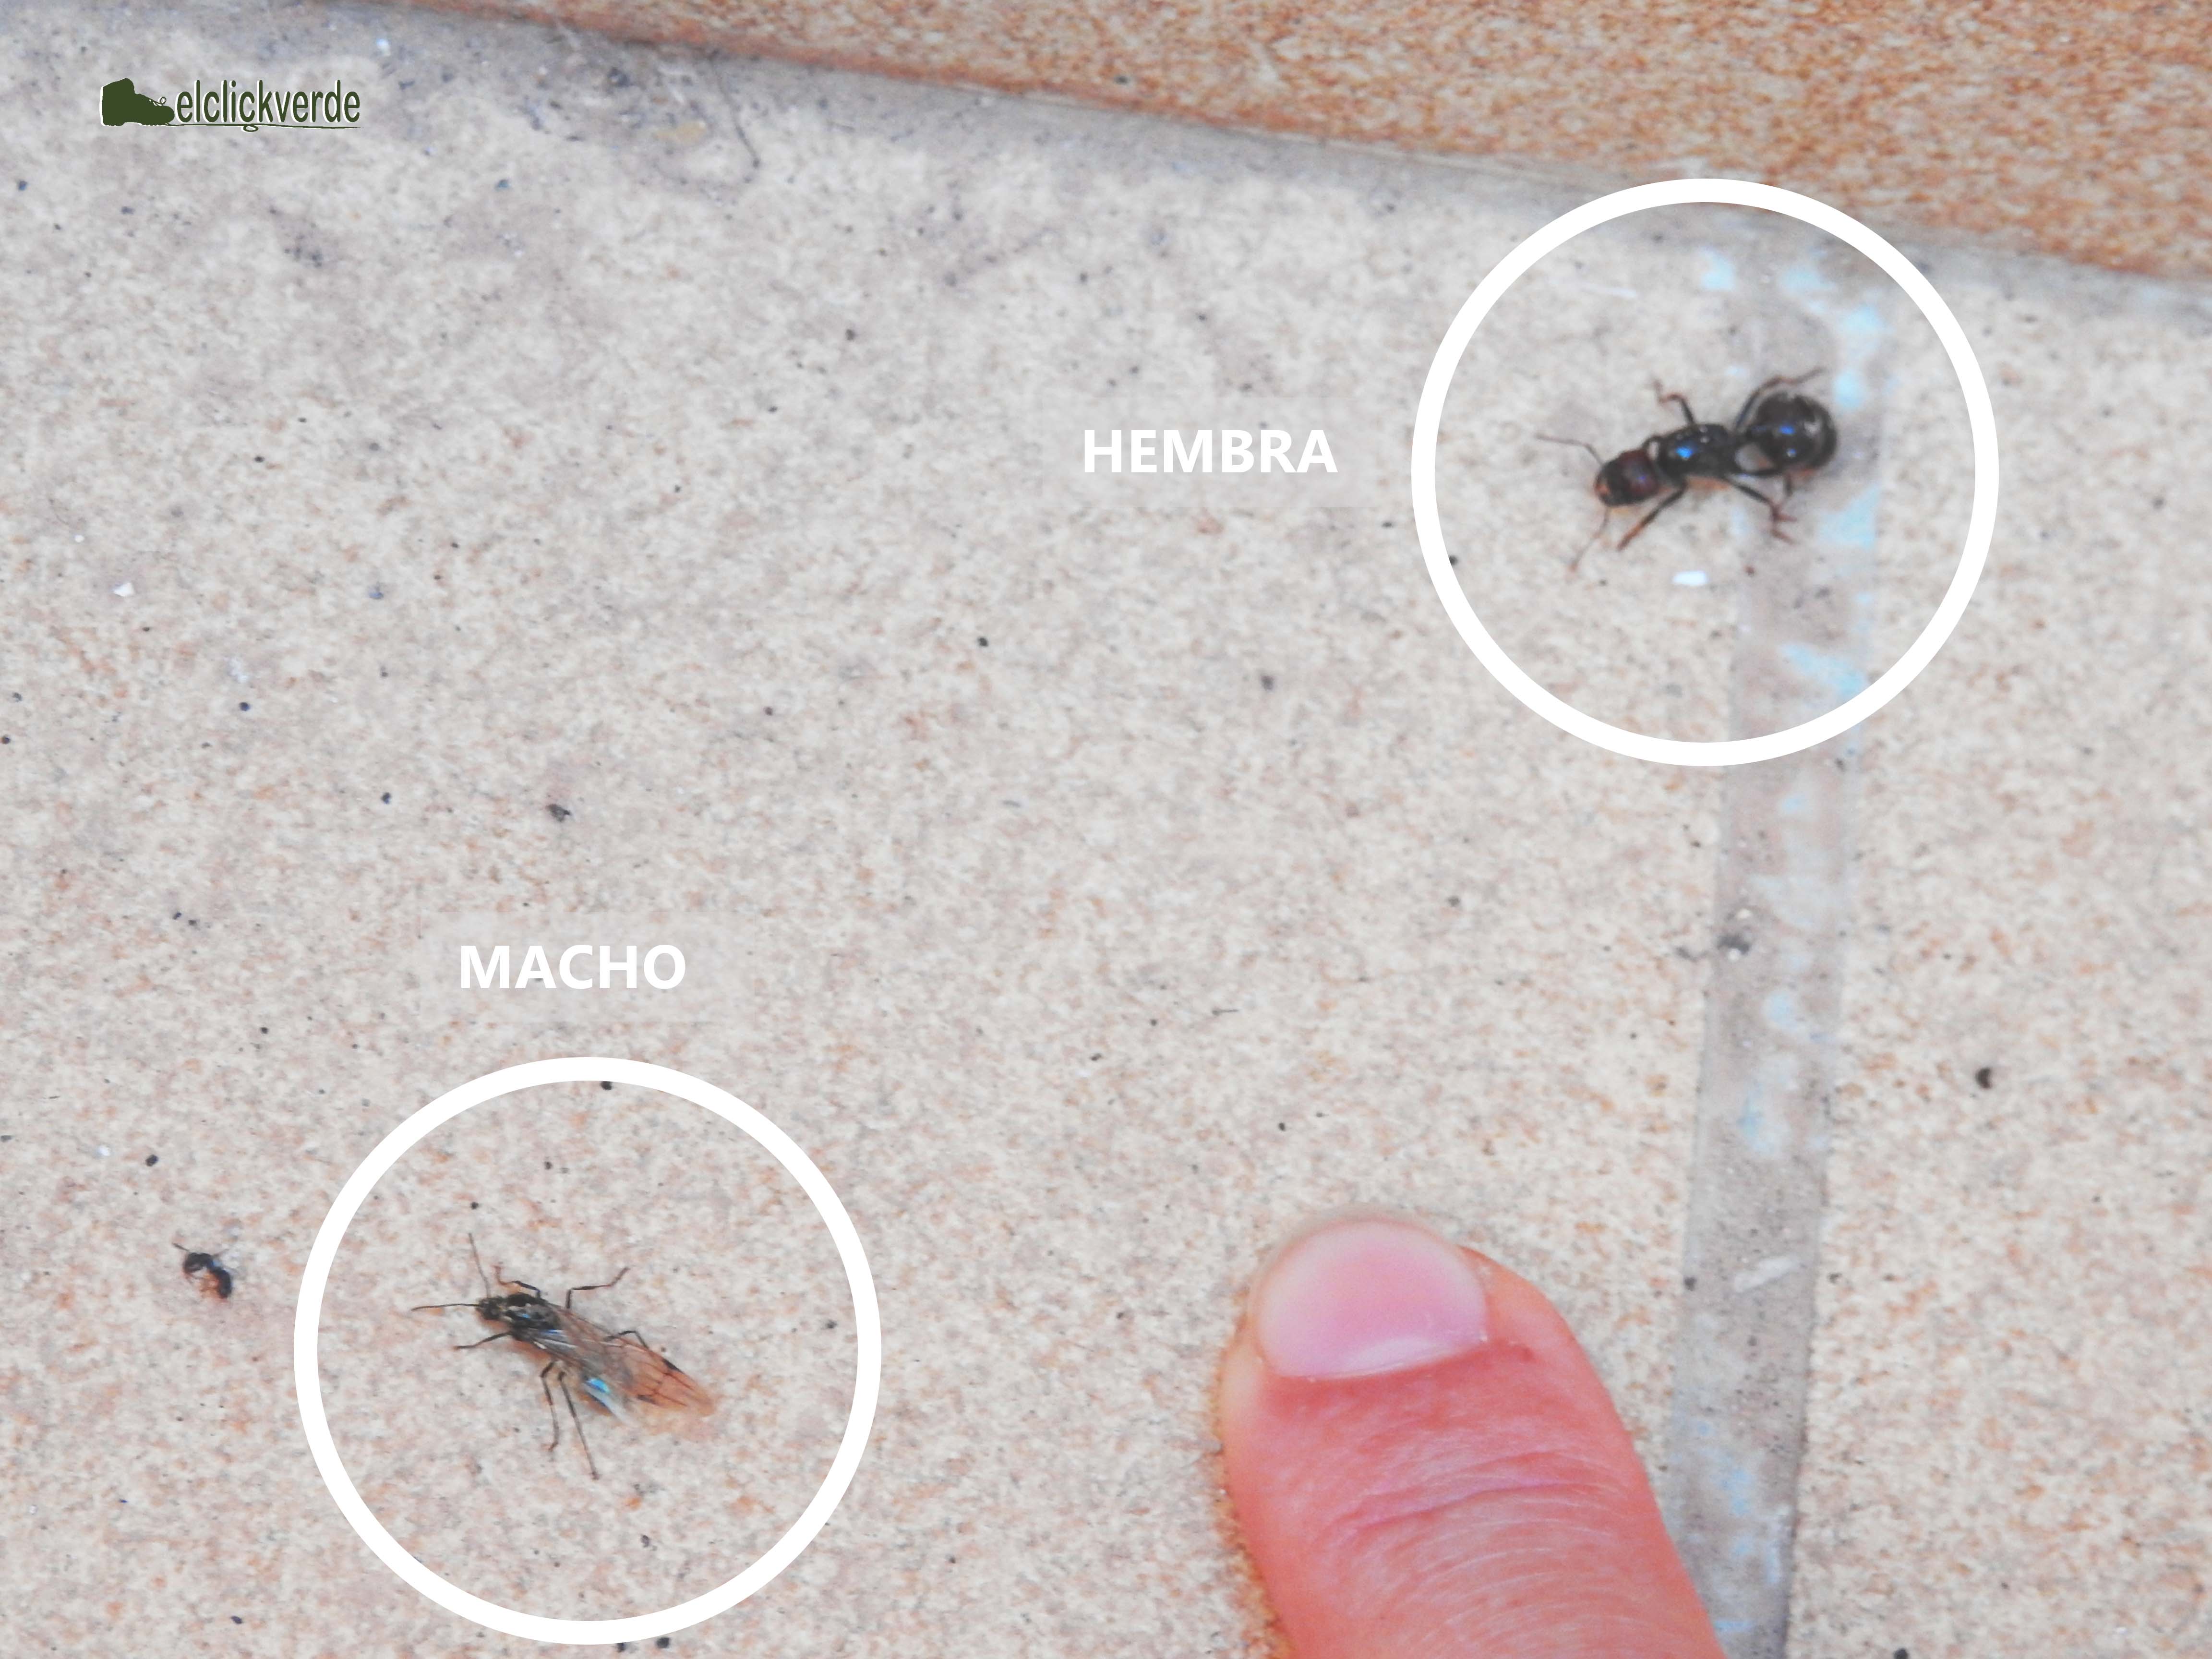 Un par de ejemplares de hormigas voladoras en la que se aprecia la diferencia entre el macho y la hembra, mucho más grande, globosa y cabezona